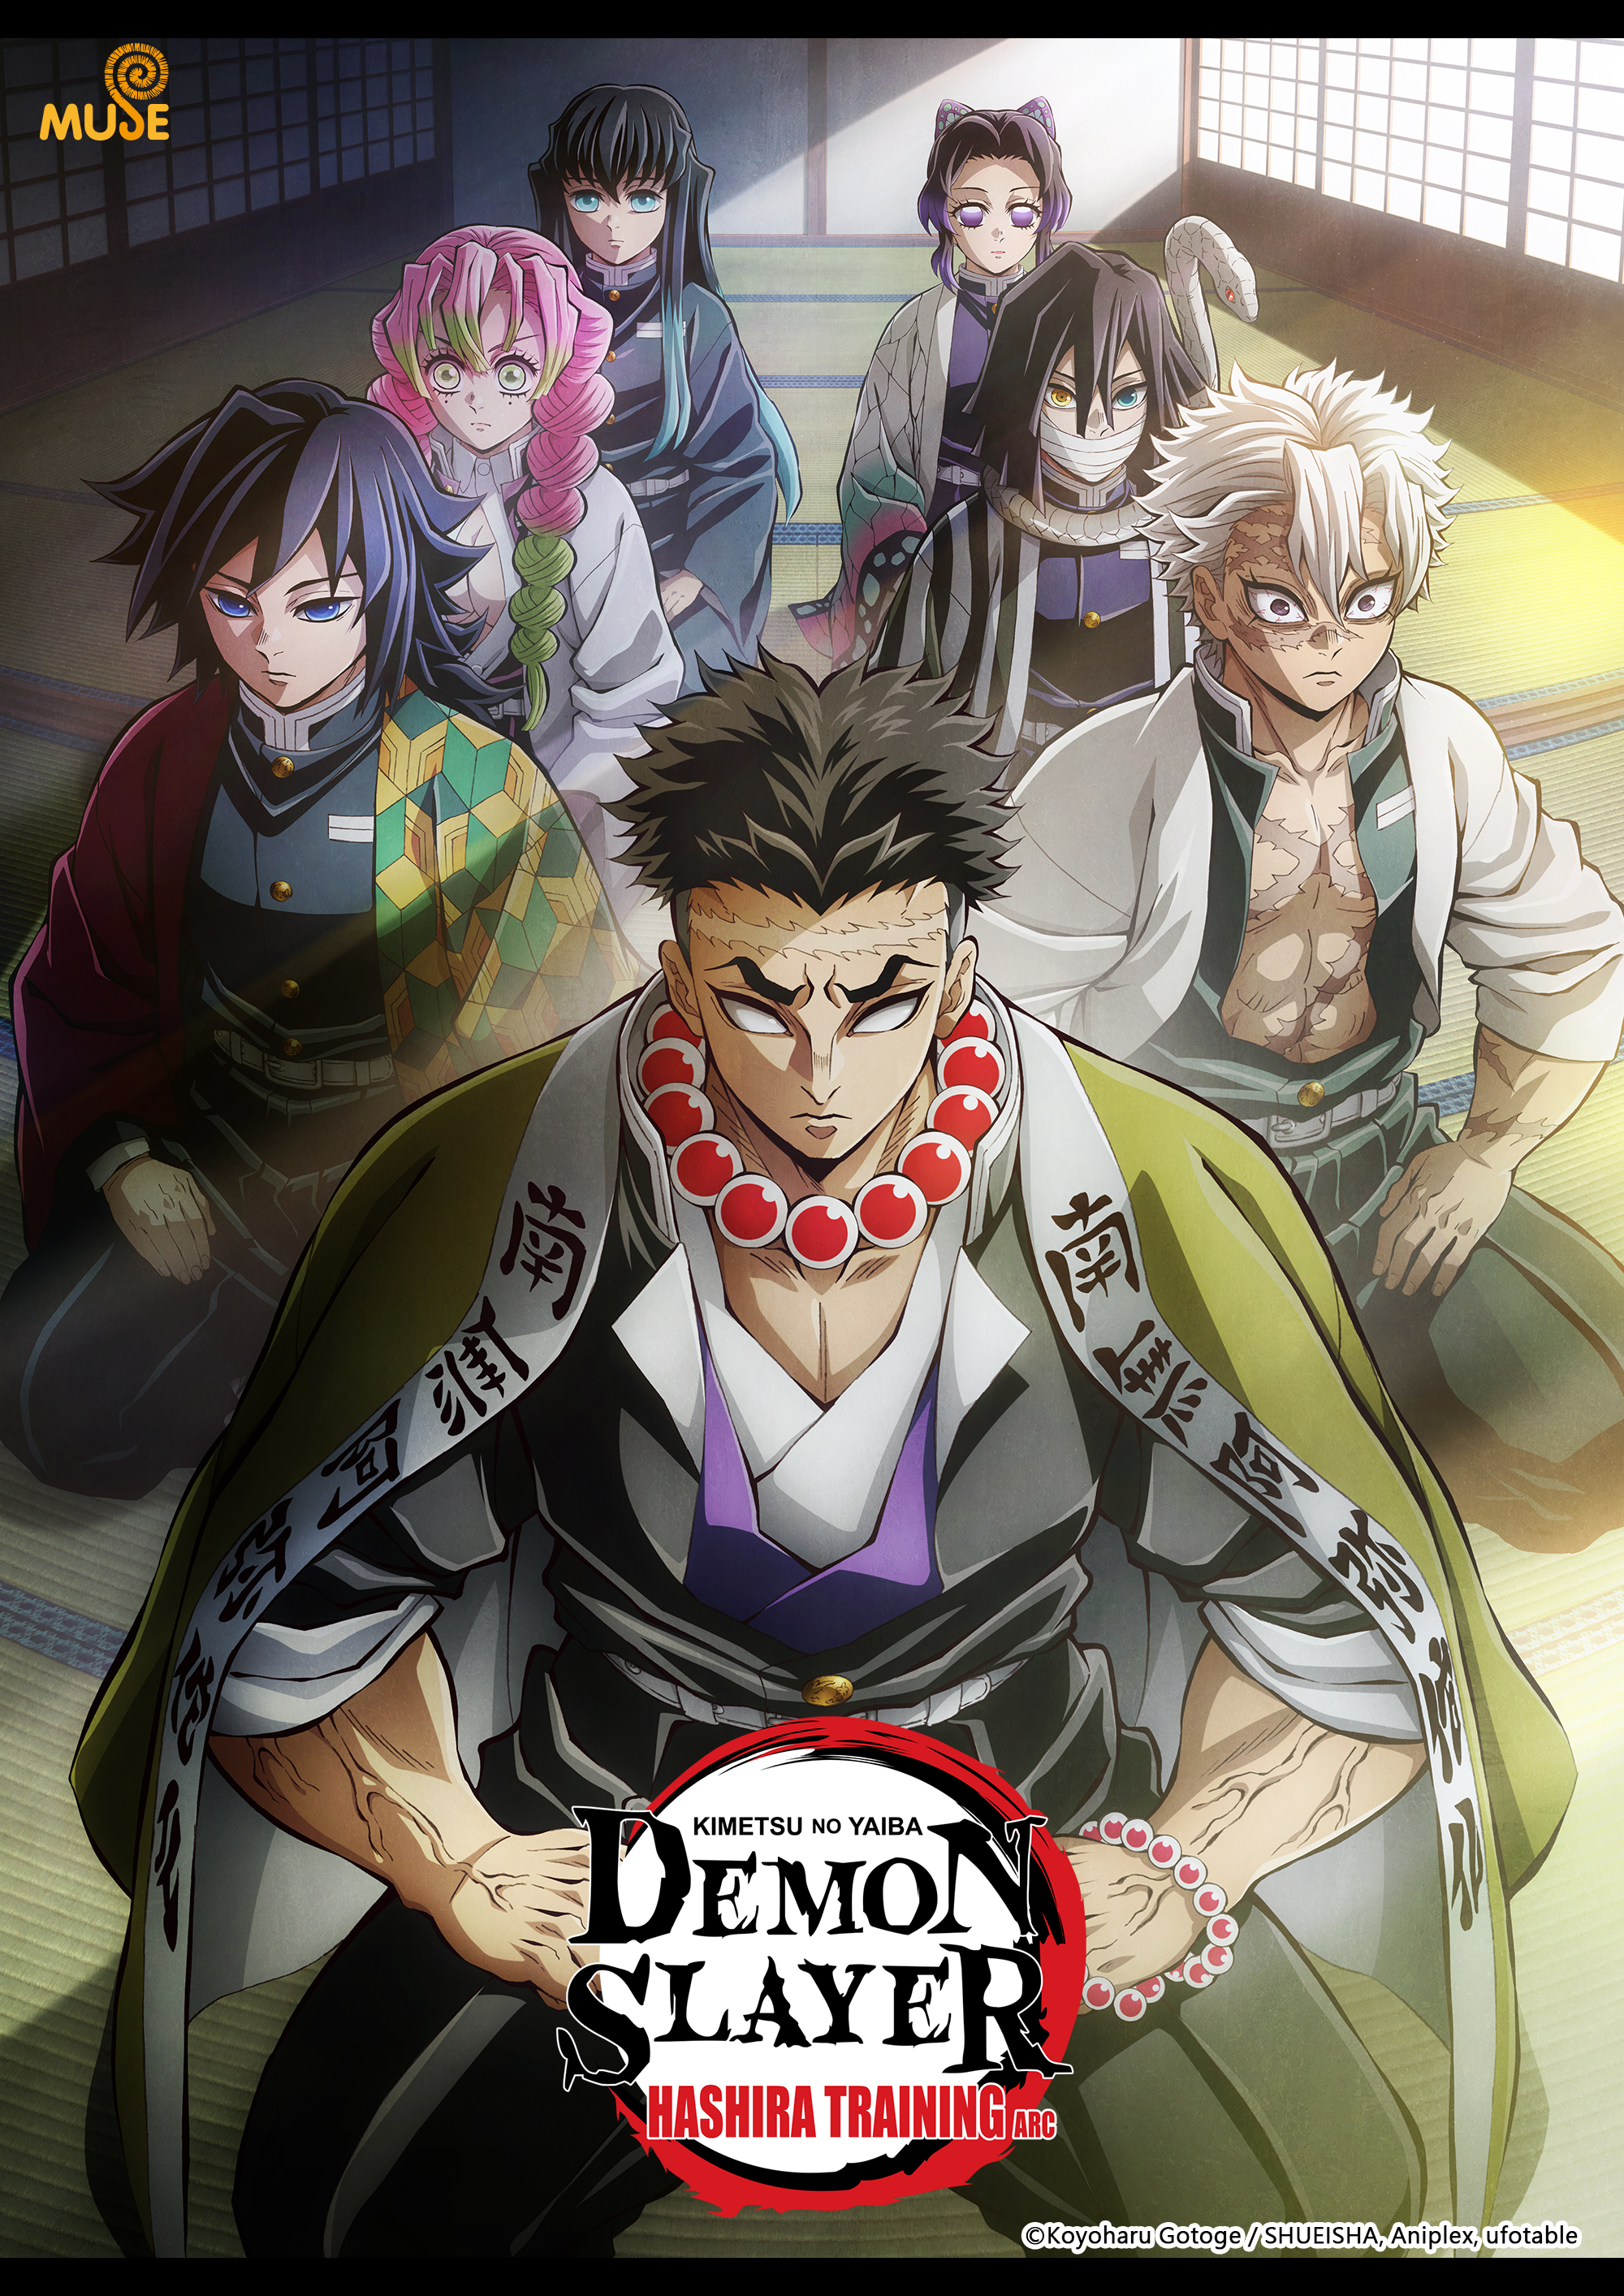 Demon Slayer: Kimetsu no Yaiba Hashira Training Arc